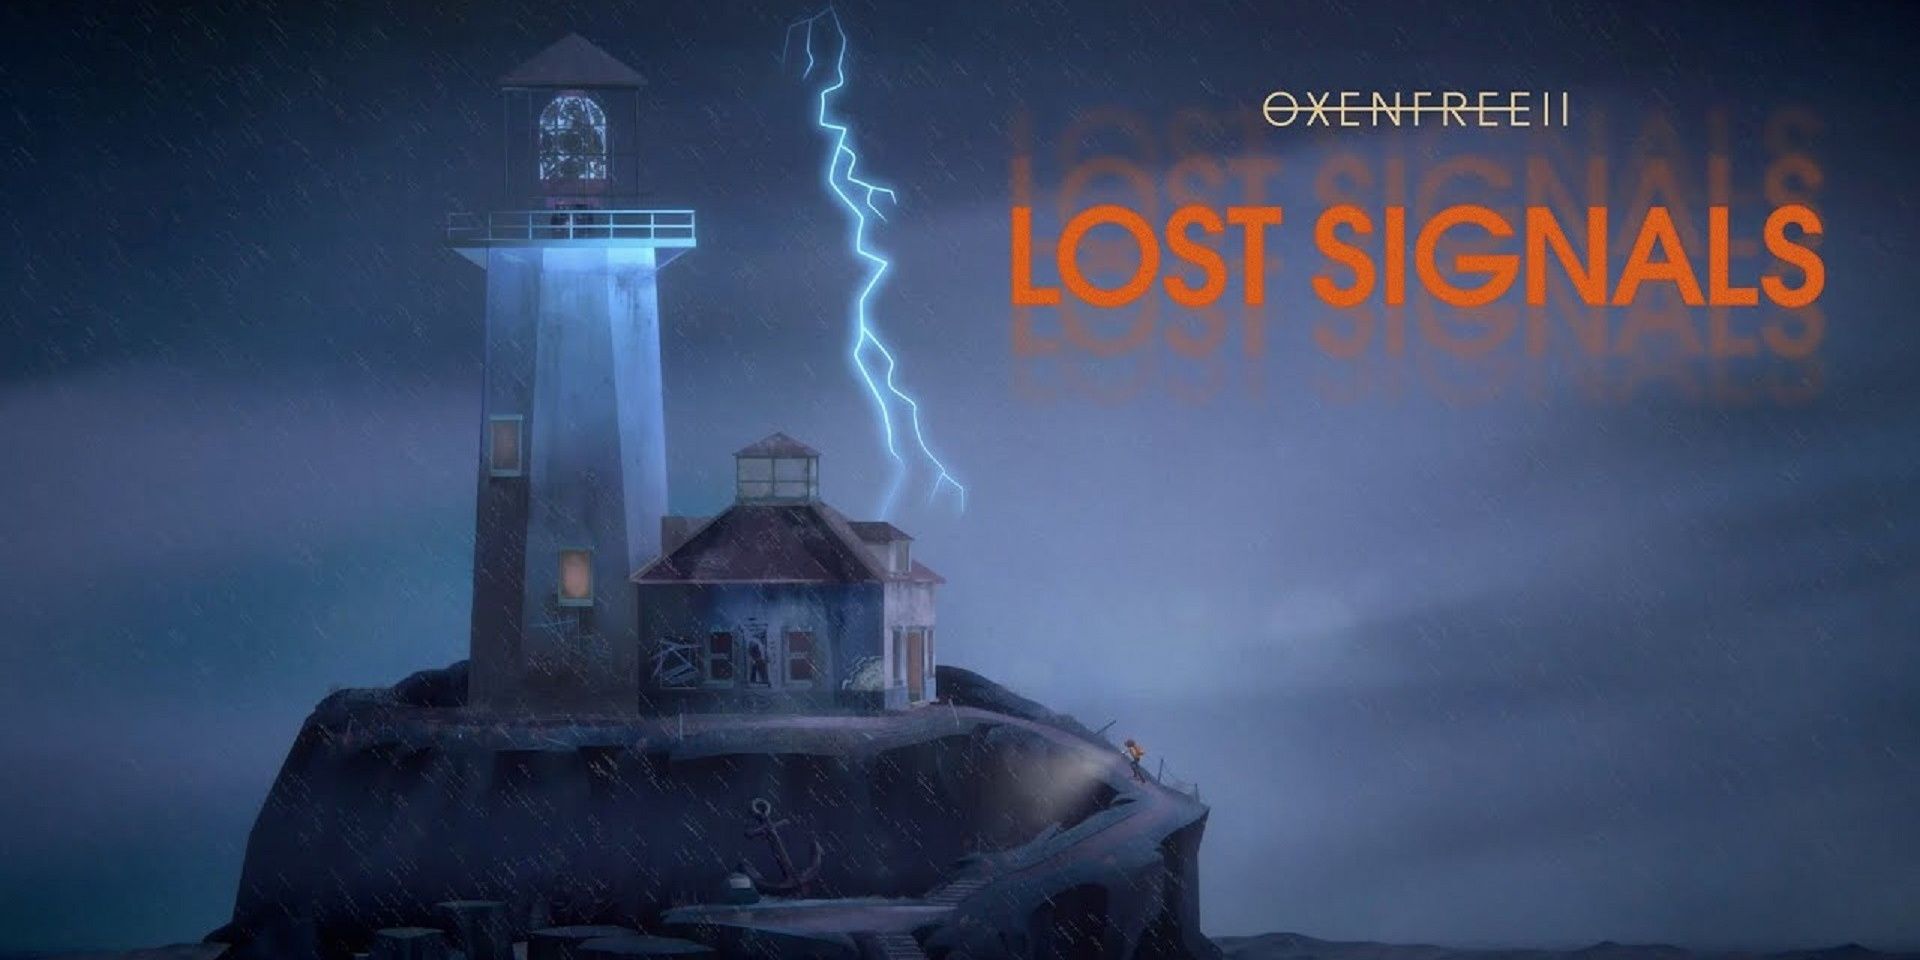 O pôster de Oxenfree 2 Lost Signals com um farol em uma ilha com relâmpagos no céu.